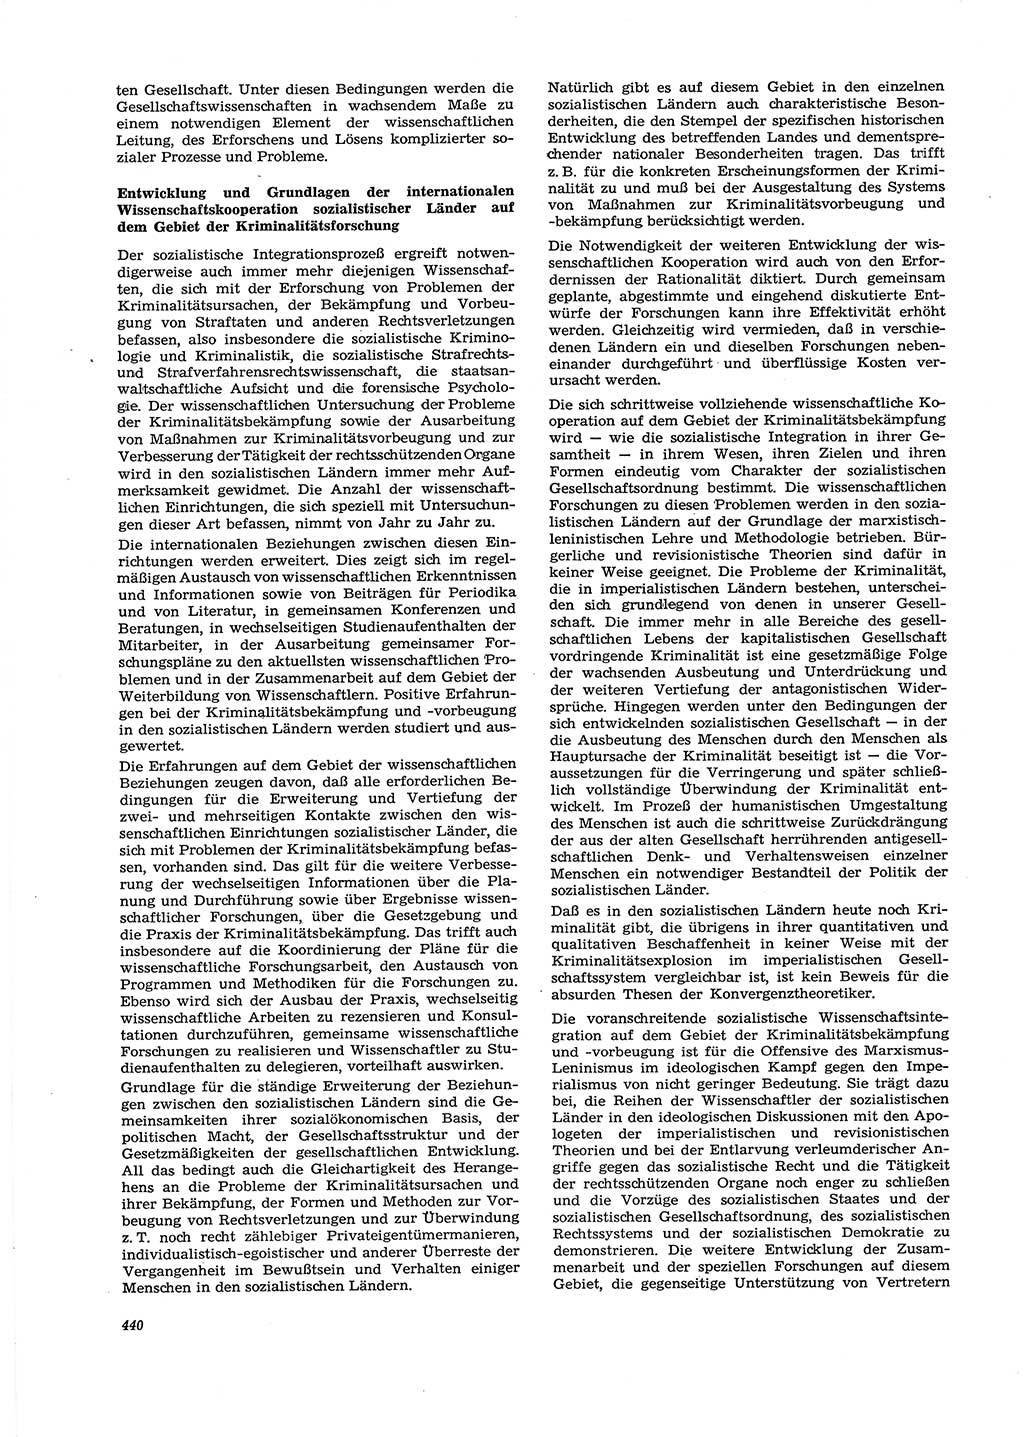 Neue Justiz (NJ), Zeitschrift für Recht und Rechtswissenschaft [Deutsche Demokratische Republik (DDR)], 29. Jahrgang 1975, Seite 440 (NJ DDR 1975, S. 440)